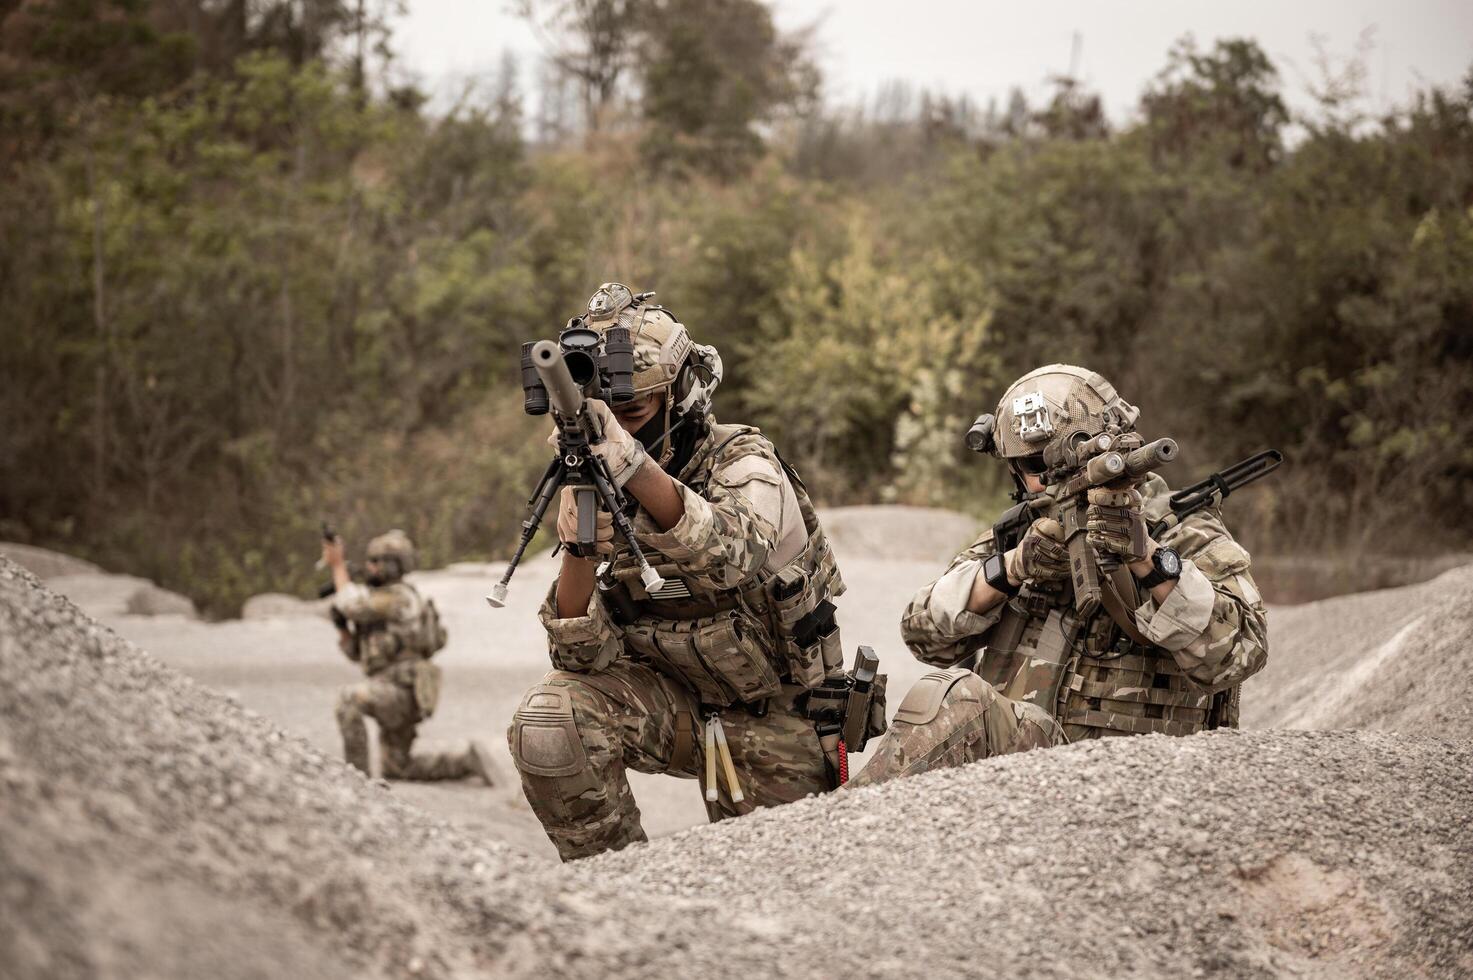 Soldaten im tarnen Uniformen Zielen mit ihr Gewehre bereit zu Feuer während Militär- Betrieb im das Wüste Soldaten Ausbildung im ein Militär- Betrieb foto